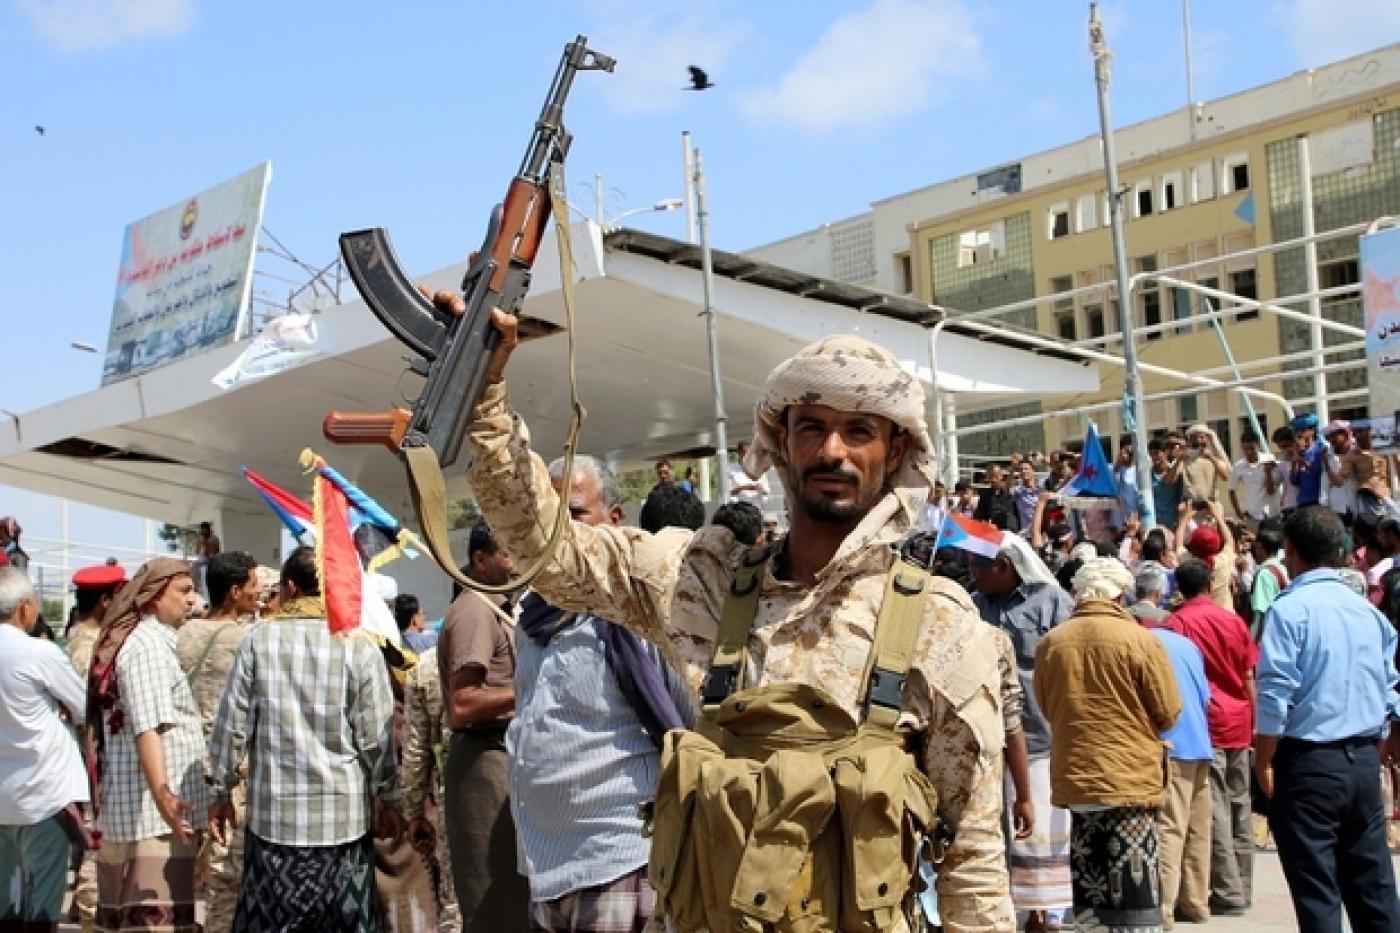 Новости йемена последнего часа. Аден (город Йемена). Северный Йемен и Южный Йемен. Йемен сепаратизм. Объединение Йемена.